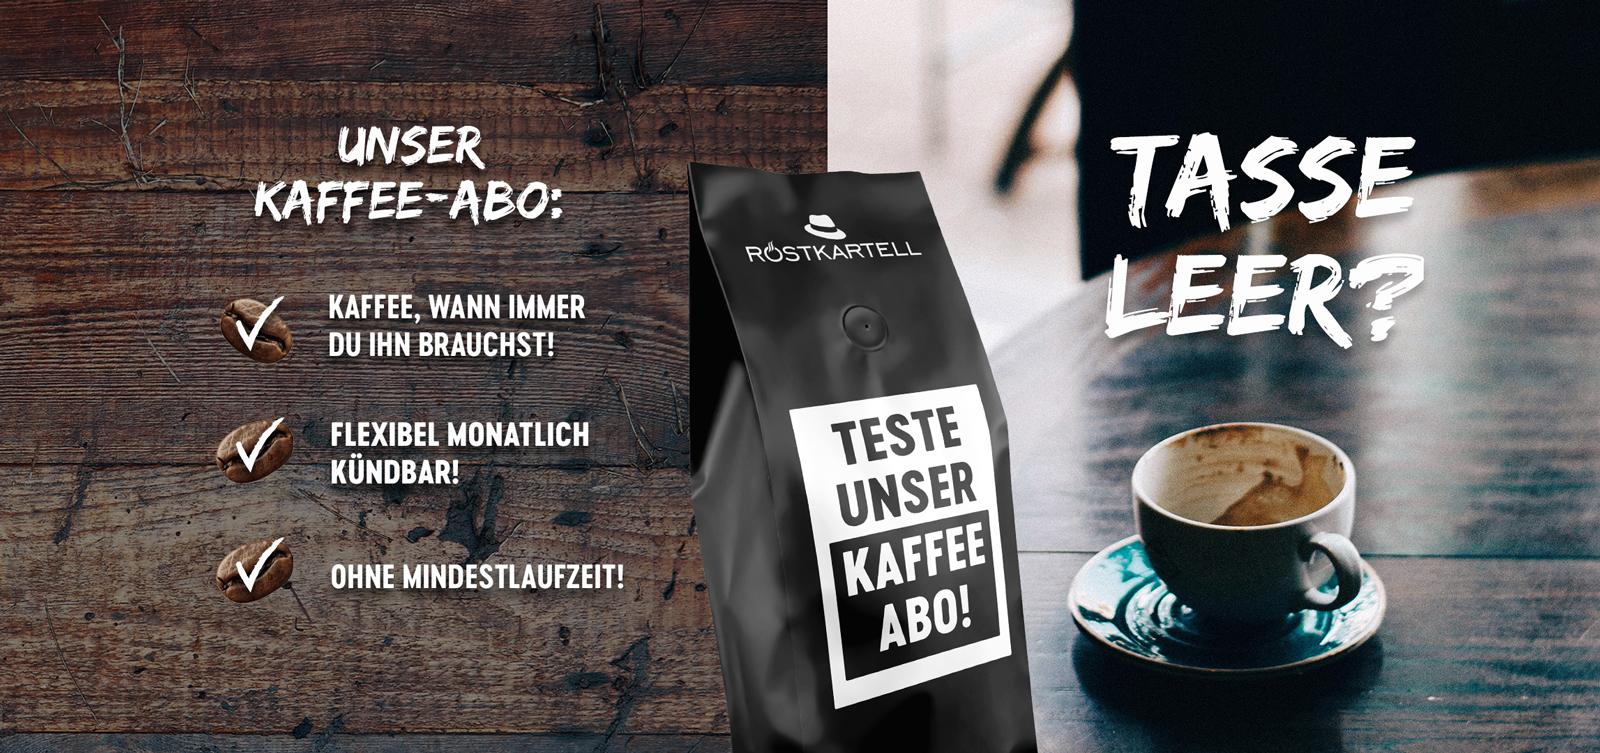 roestkartell_kaffeeabo_banner-1_vorschau.jpg